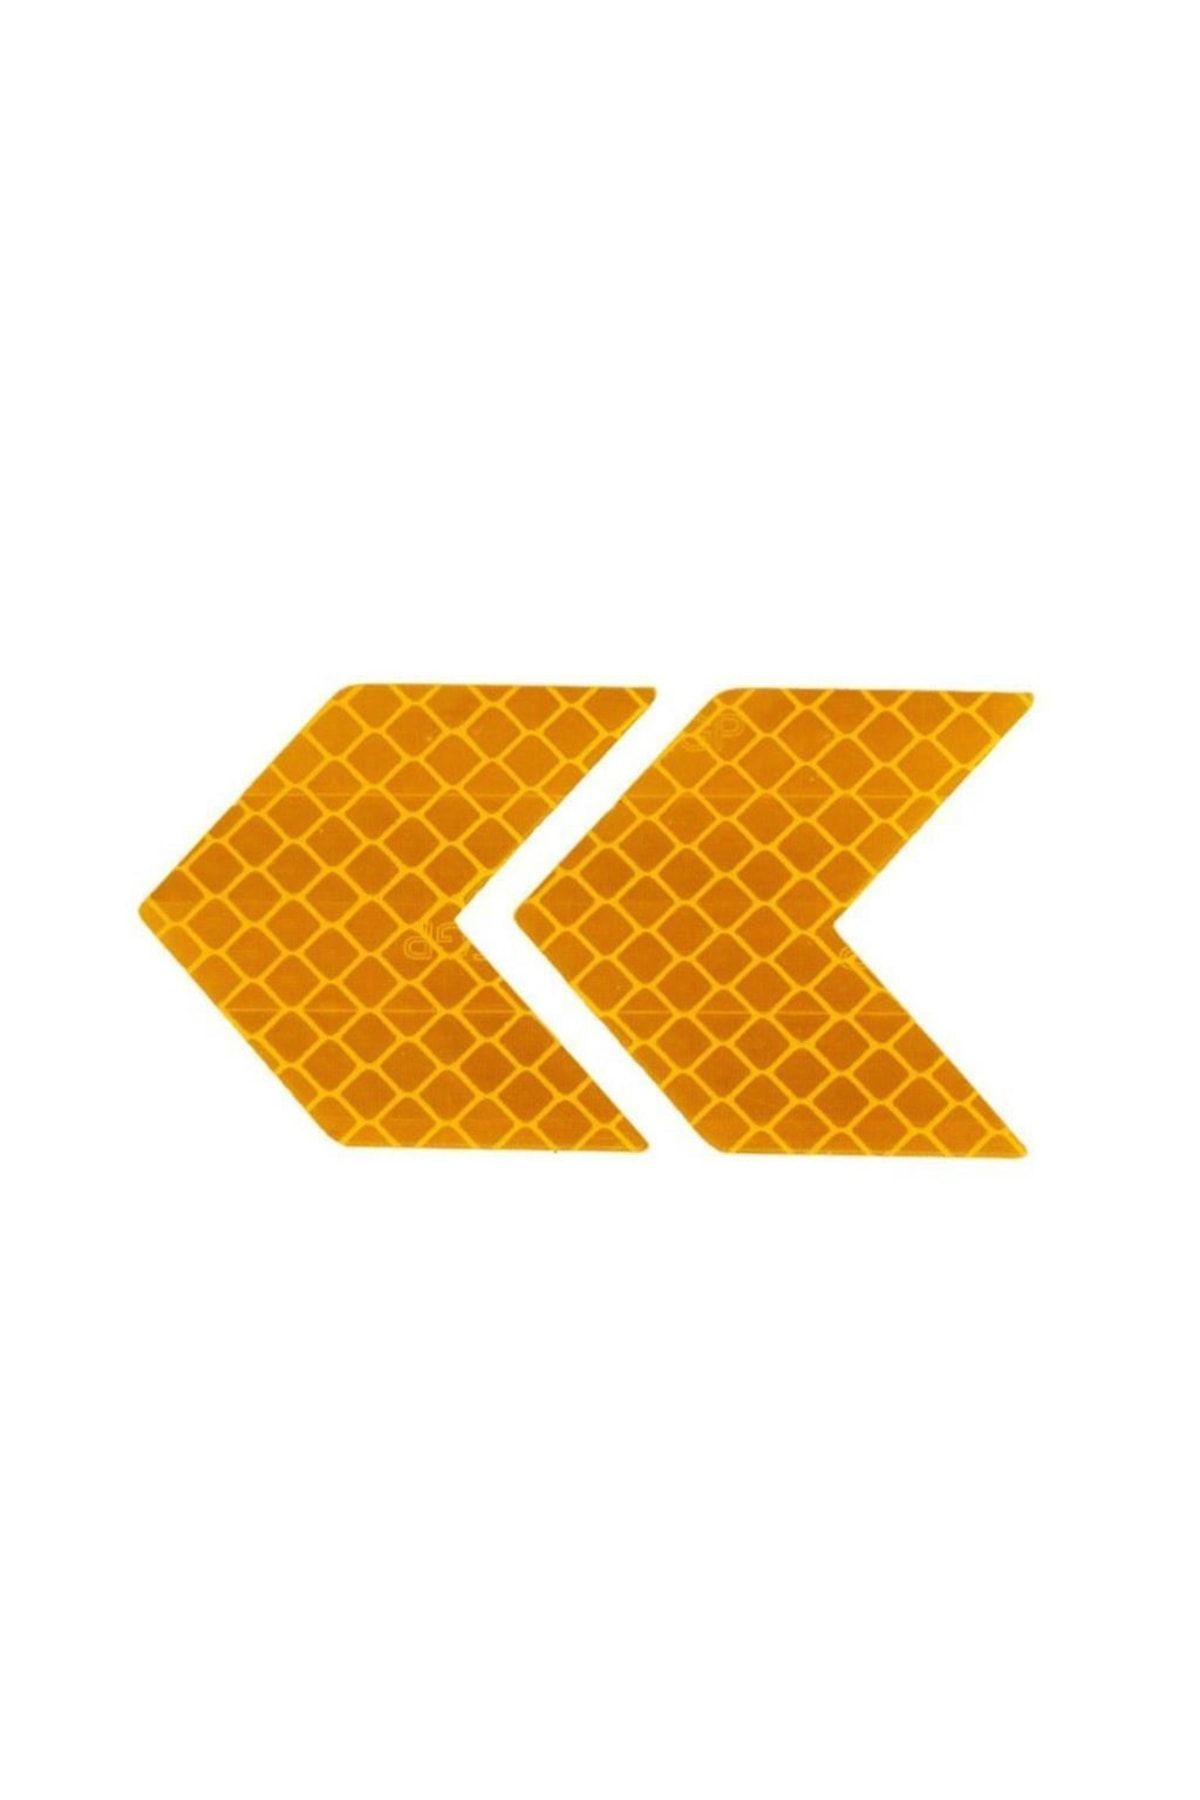 Knmaster Ok Şerit Reflektörlü Yansıtıcı Sticker Etiket Fosfor Turuncu